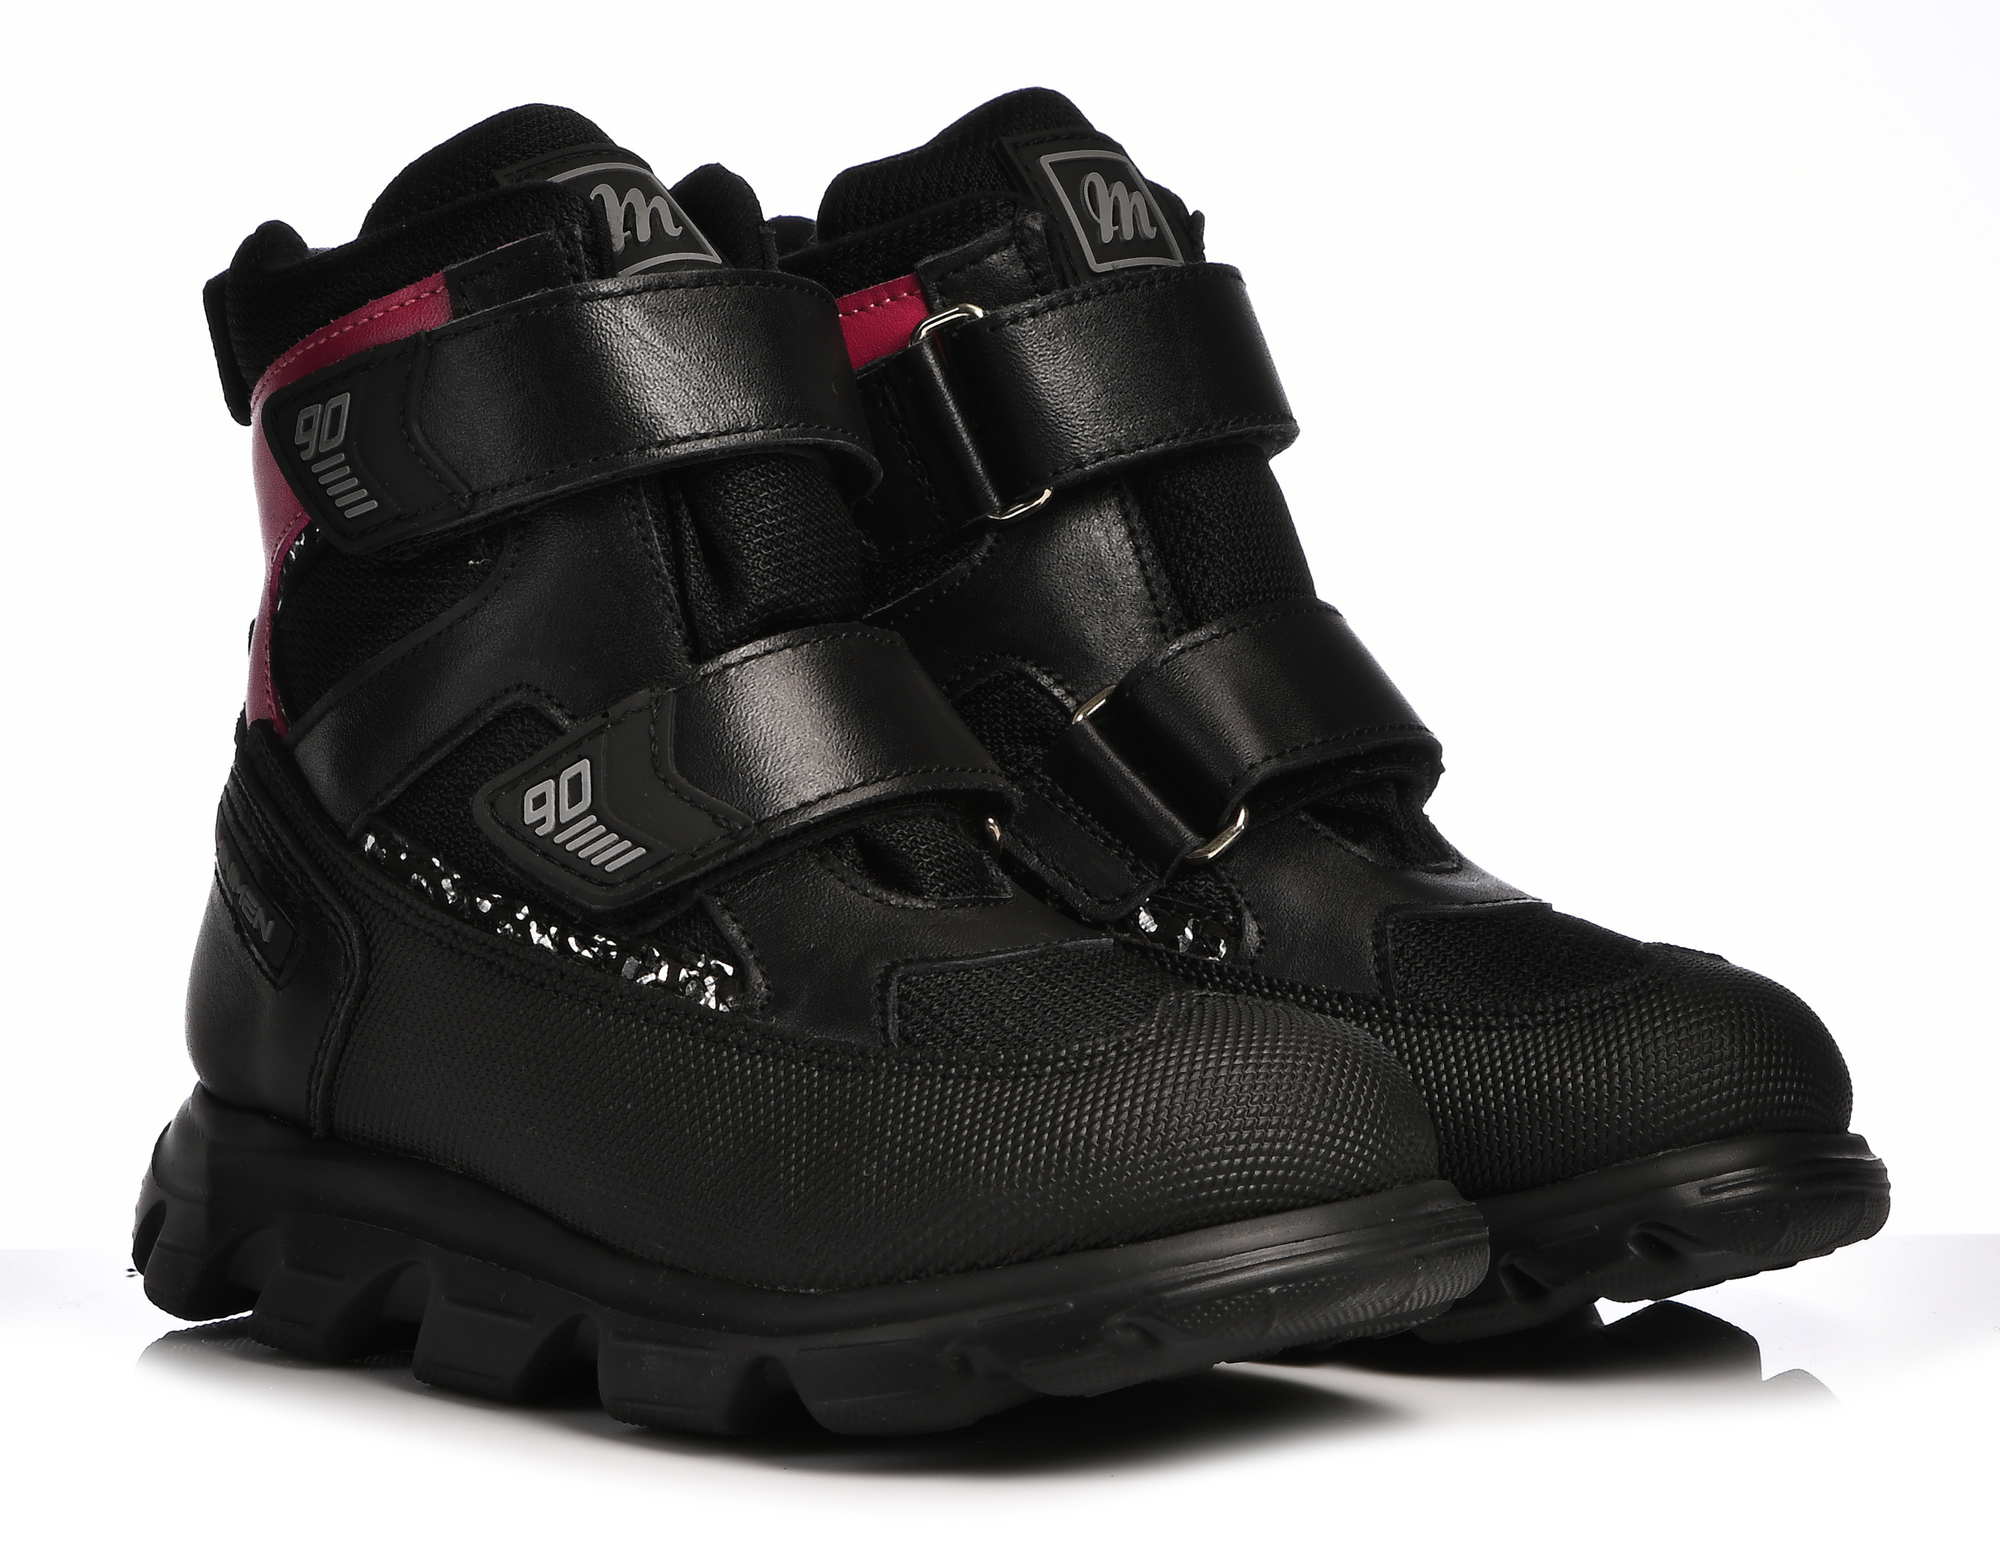 Ботинки Minimen для девочек, чёрные, размер 29, 2641-53-23B-04